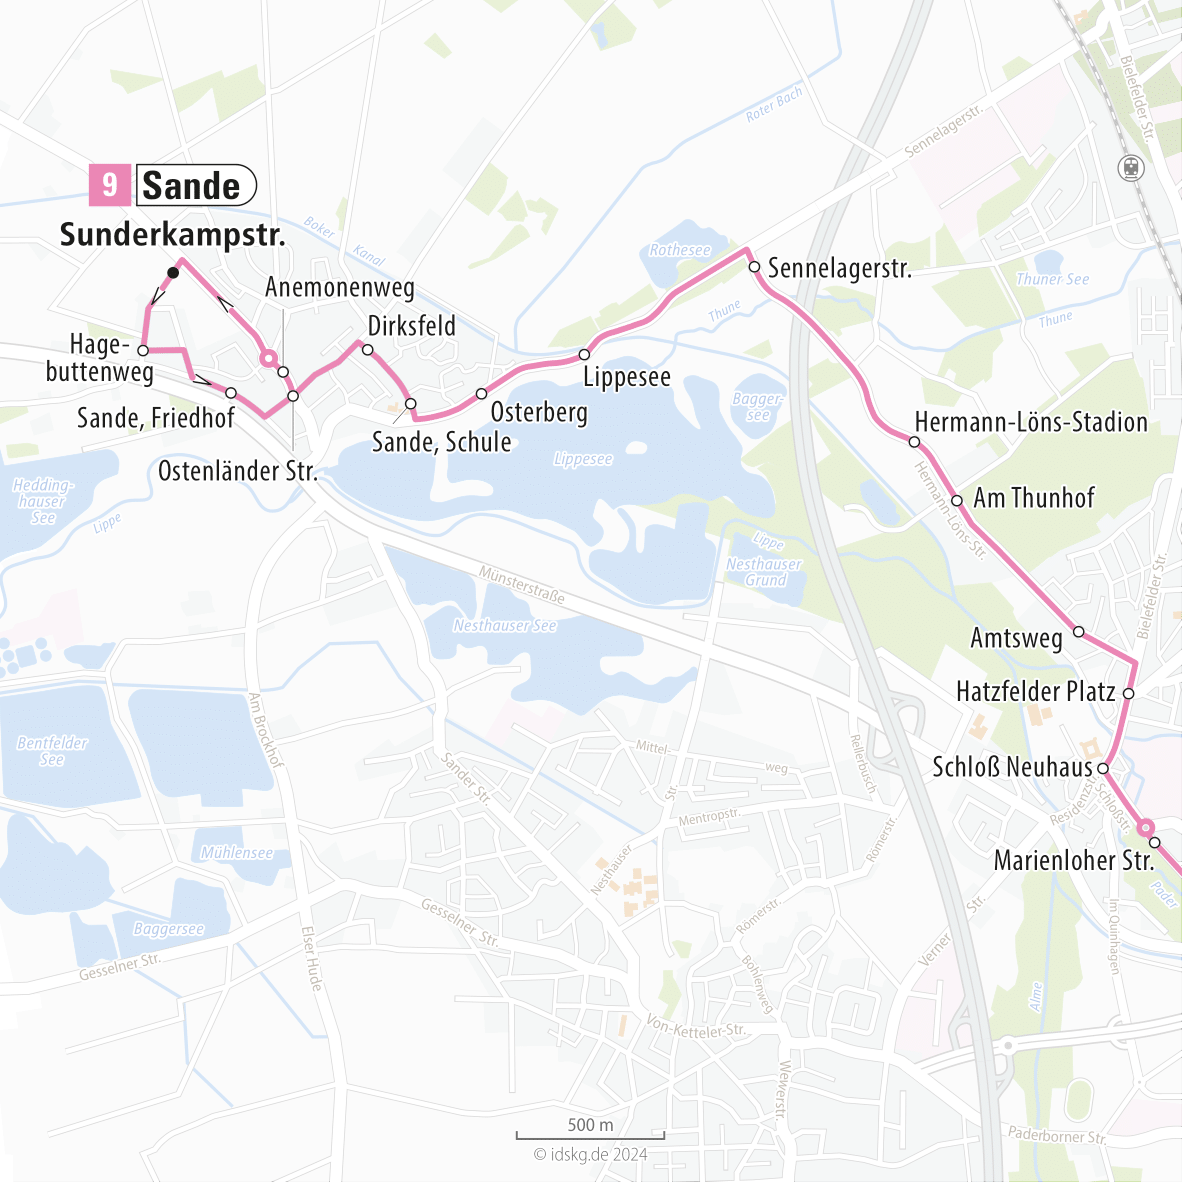 Kartenausschnitt der Linie 9 Sande bis Schloss Neuhaus 15x15